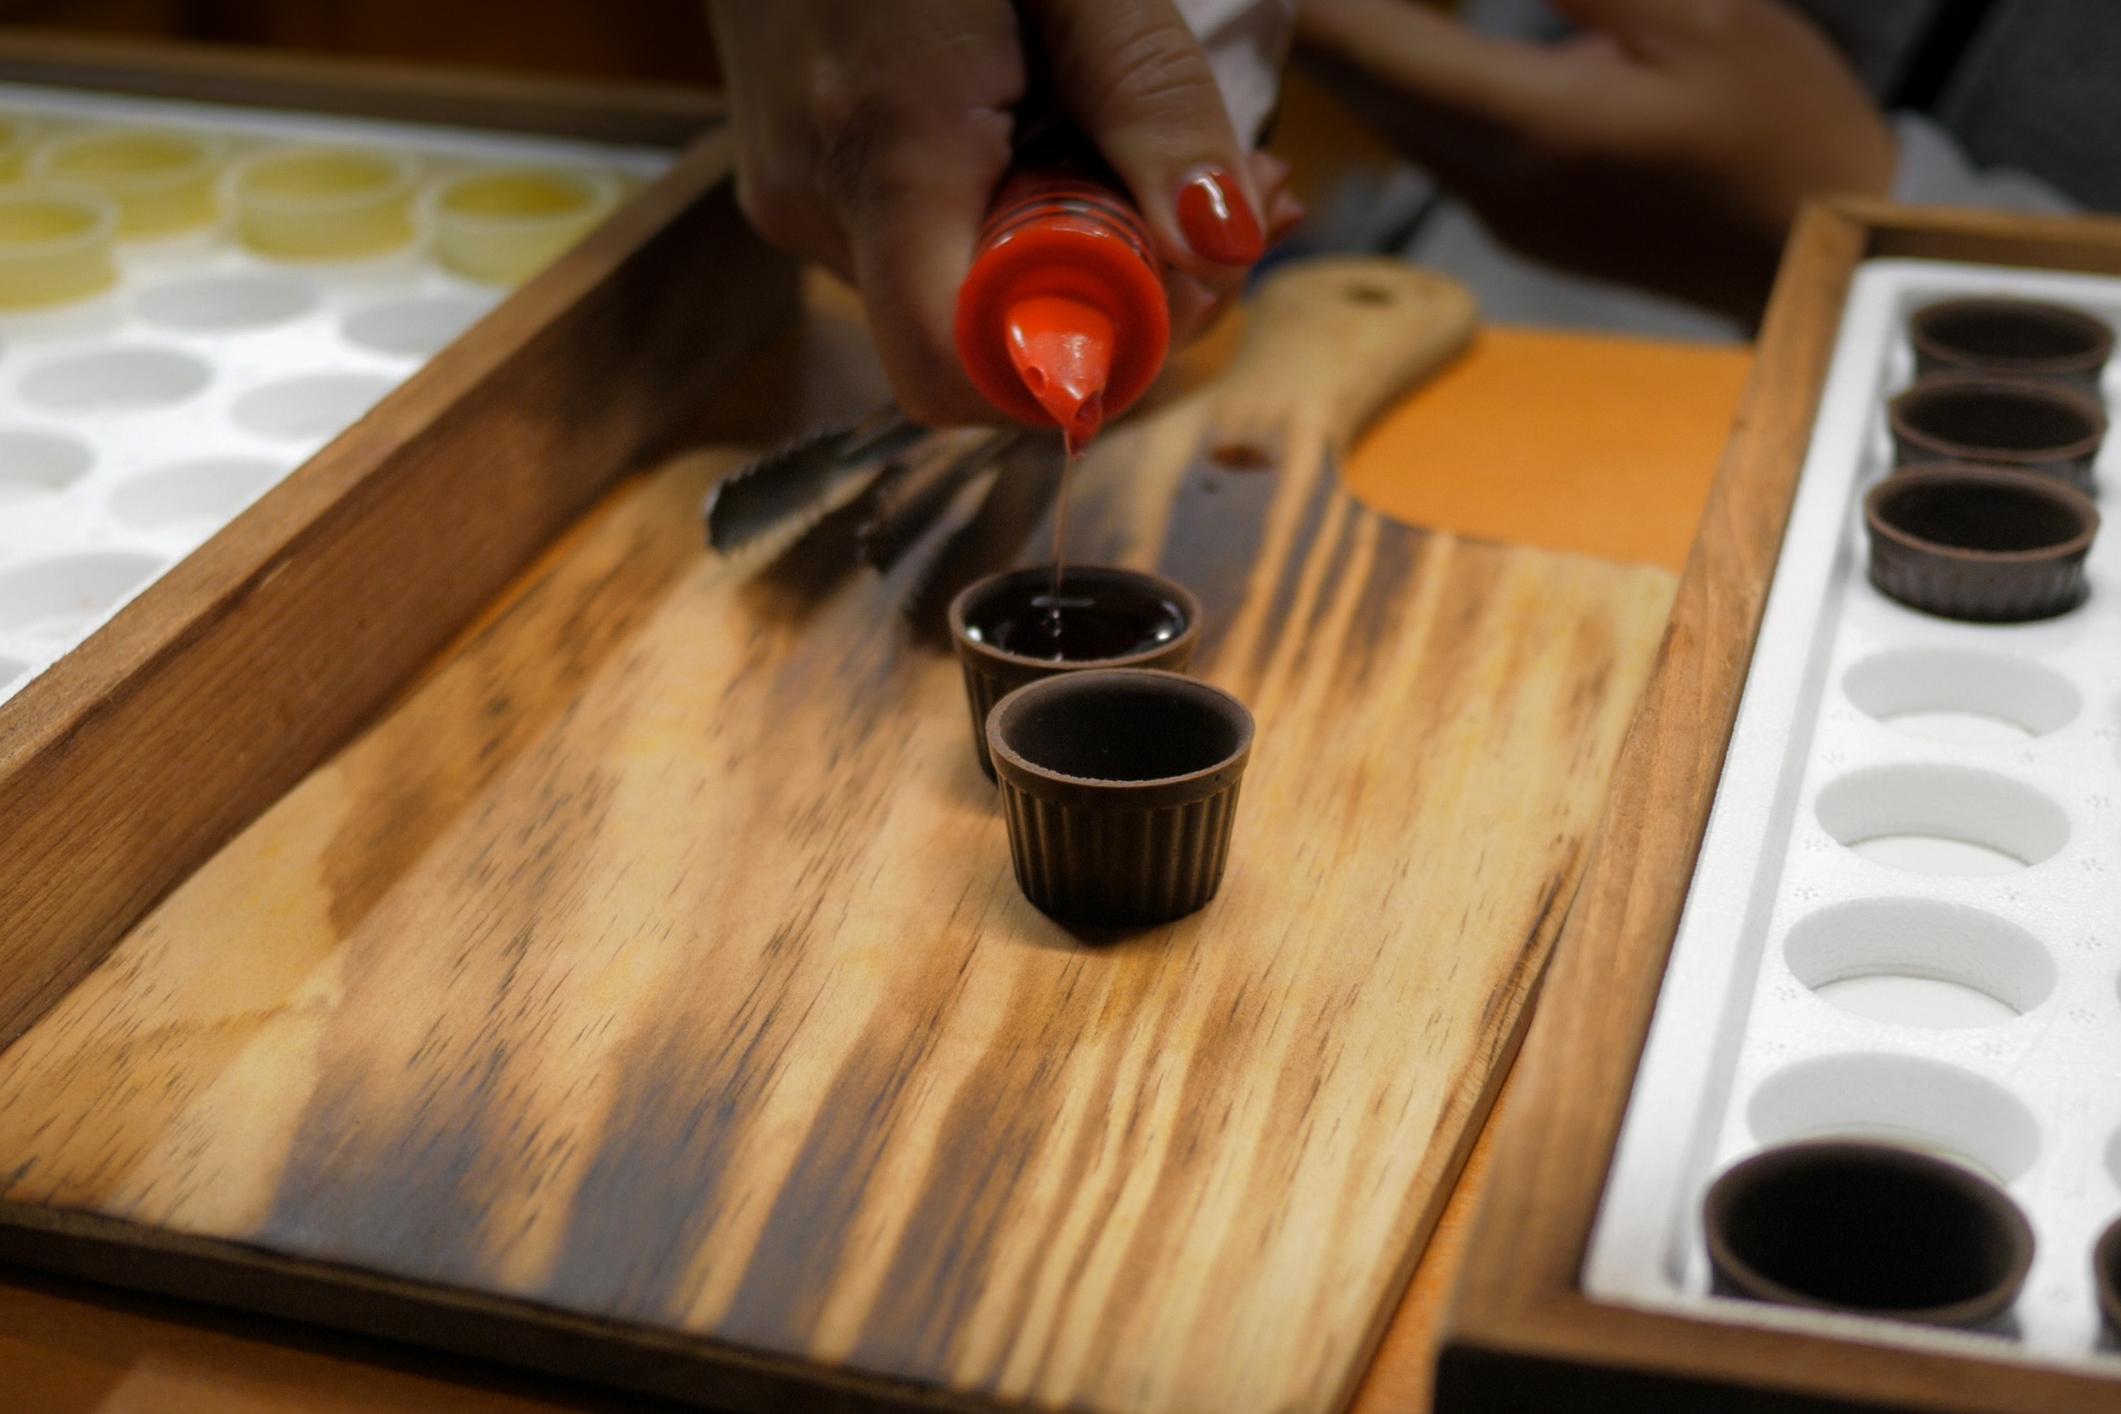 Una persona sirve Ginjinha en vasos de chupito de chocolate.